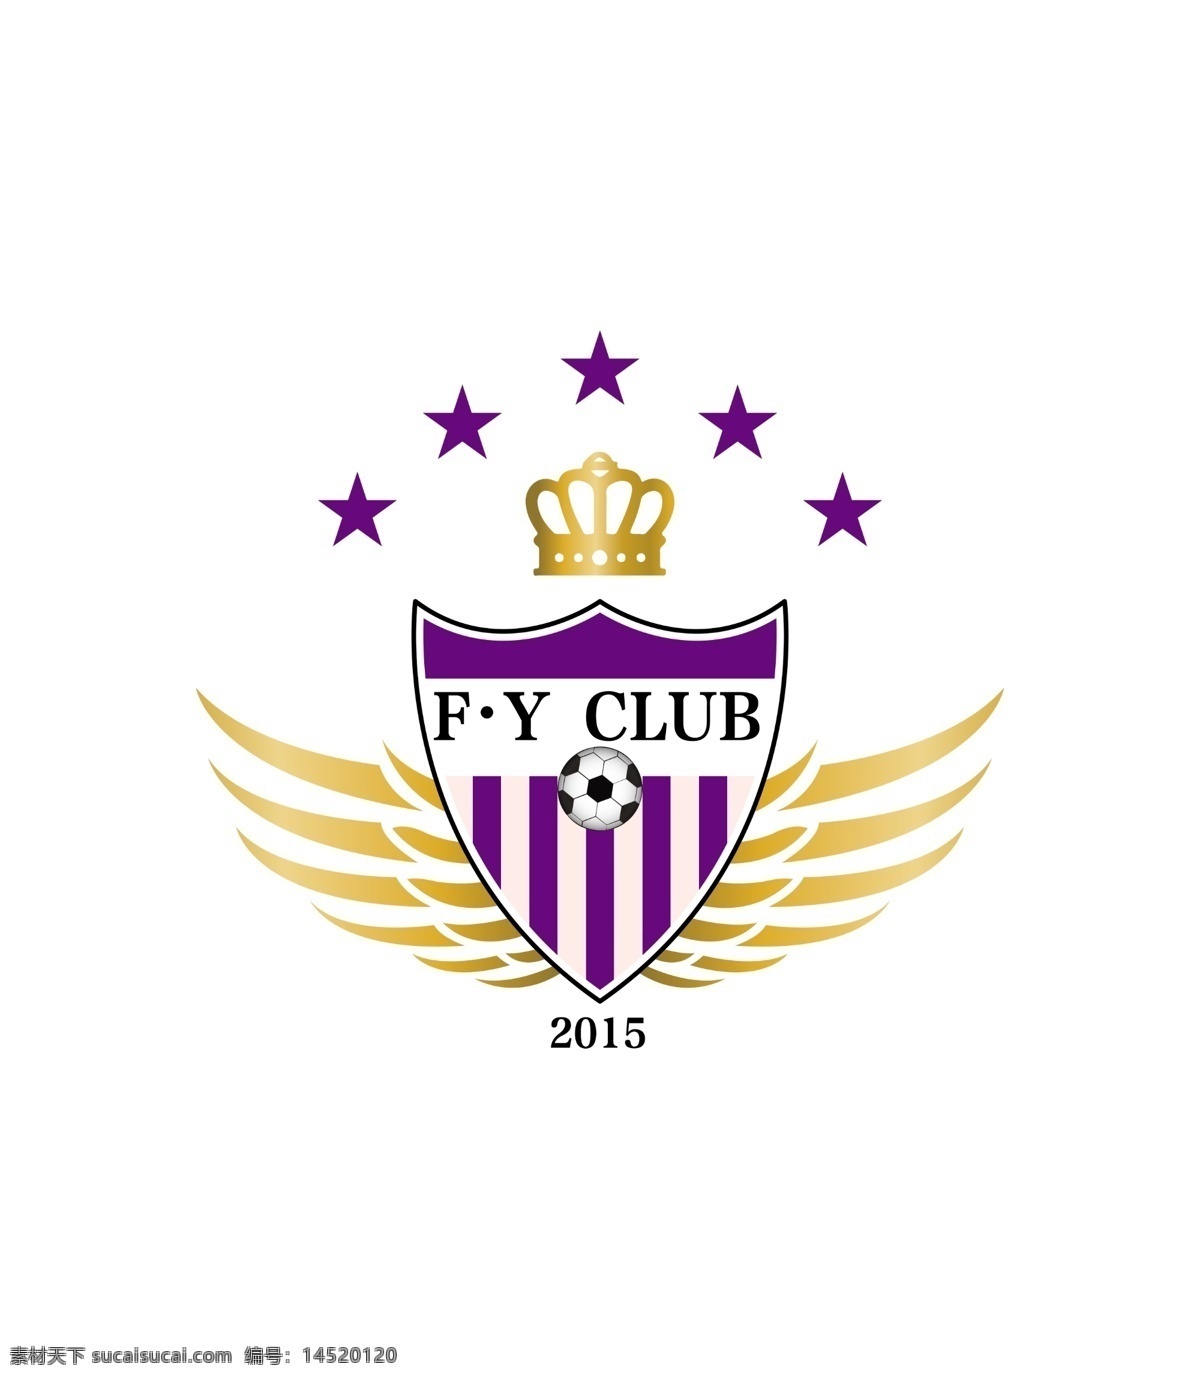 足球 俱乐部 logo 标志 企业 皇冠 盾牌 翅膀 五角星 logo设计